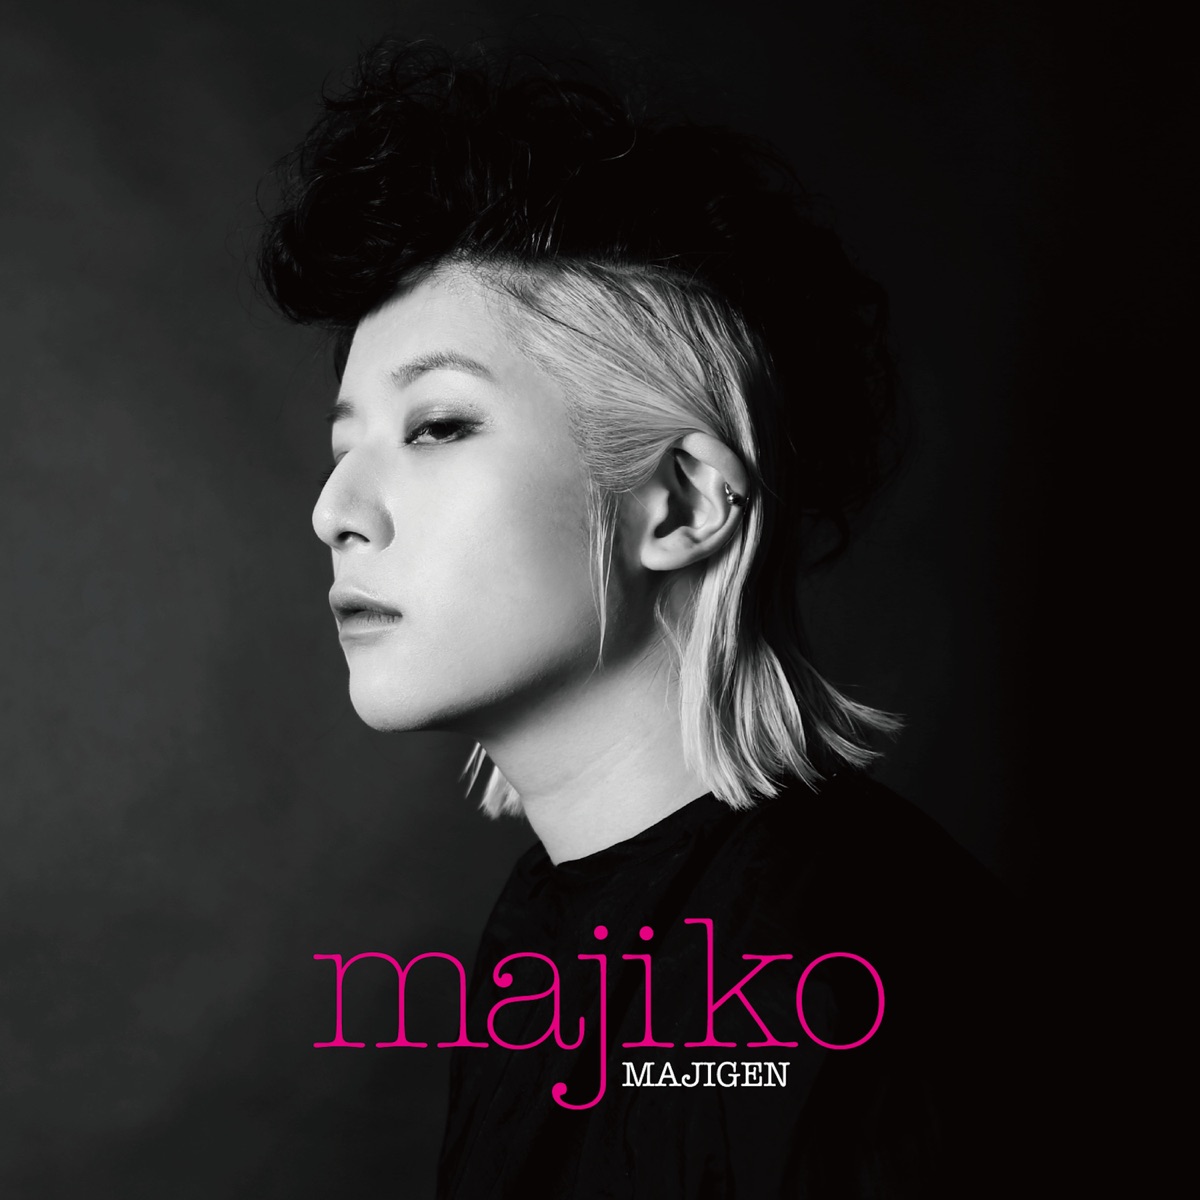 Cover art for『majiko - Samsara』from the release『MAJIGEN』